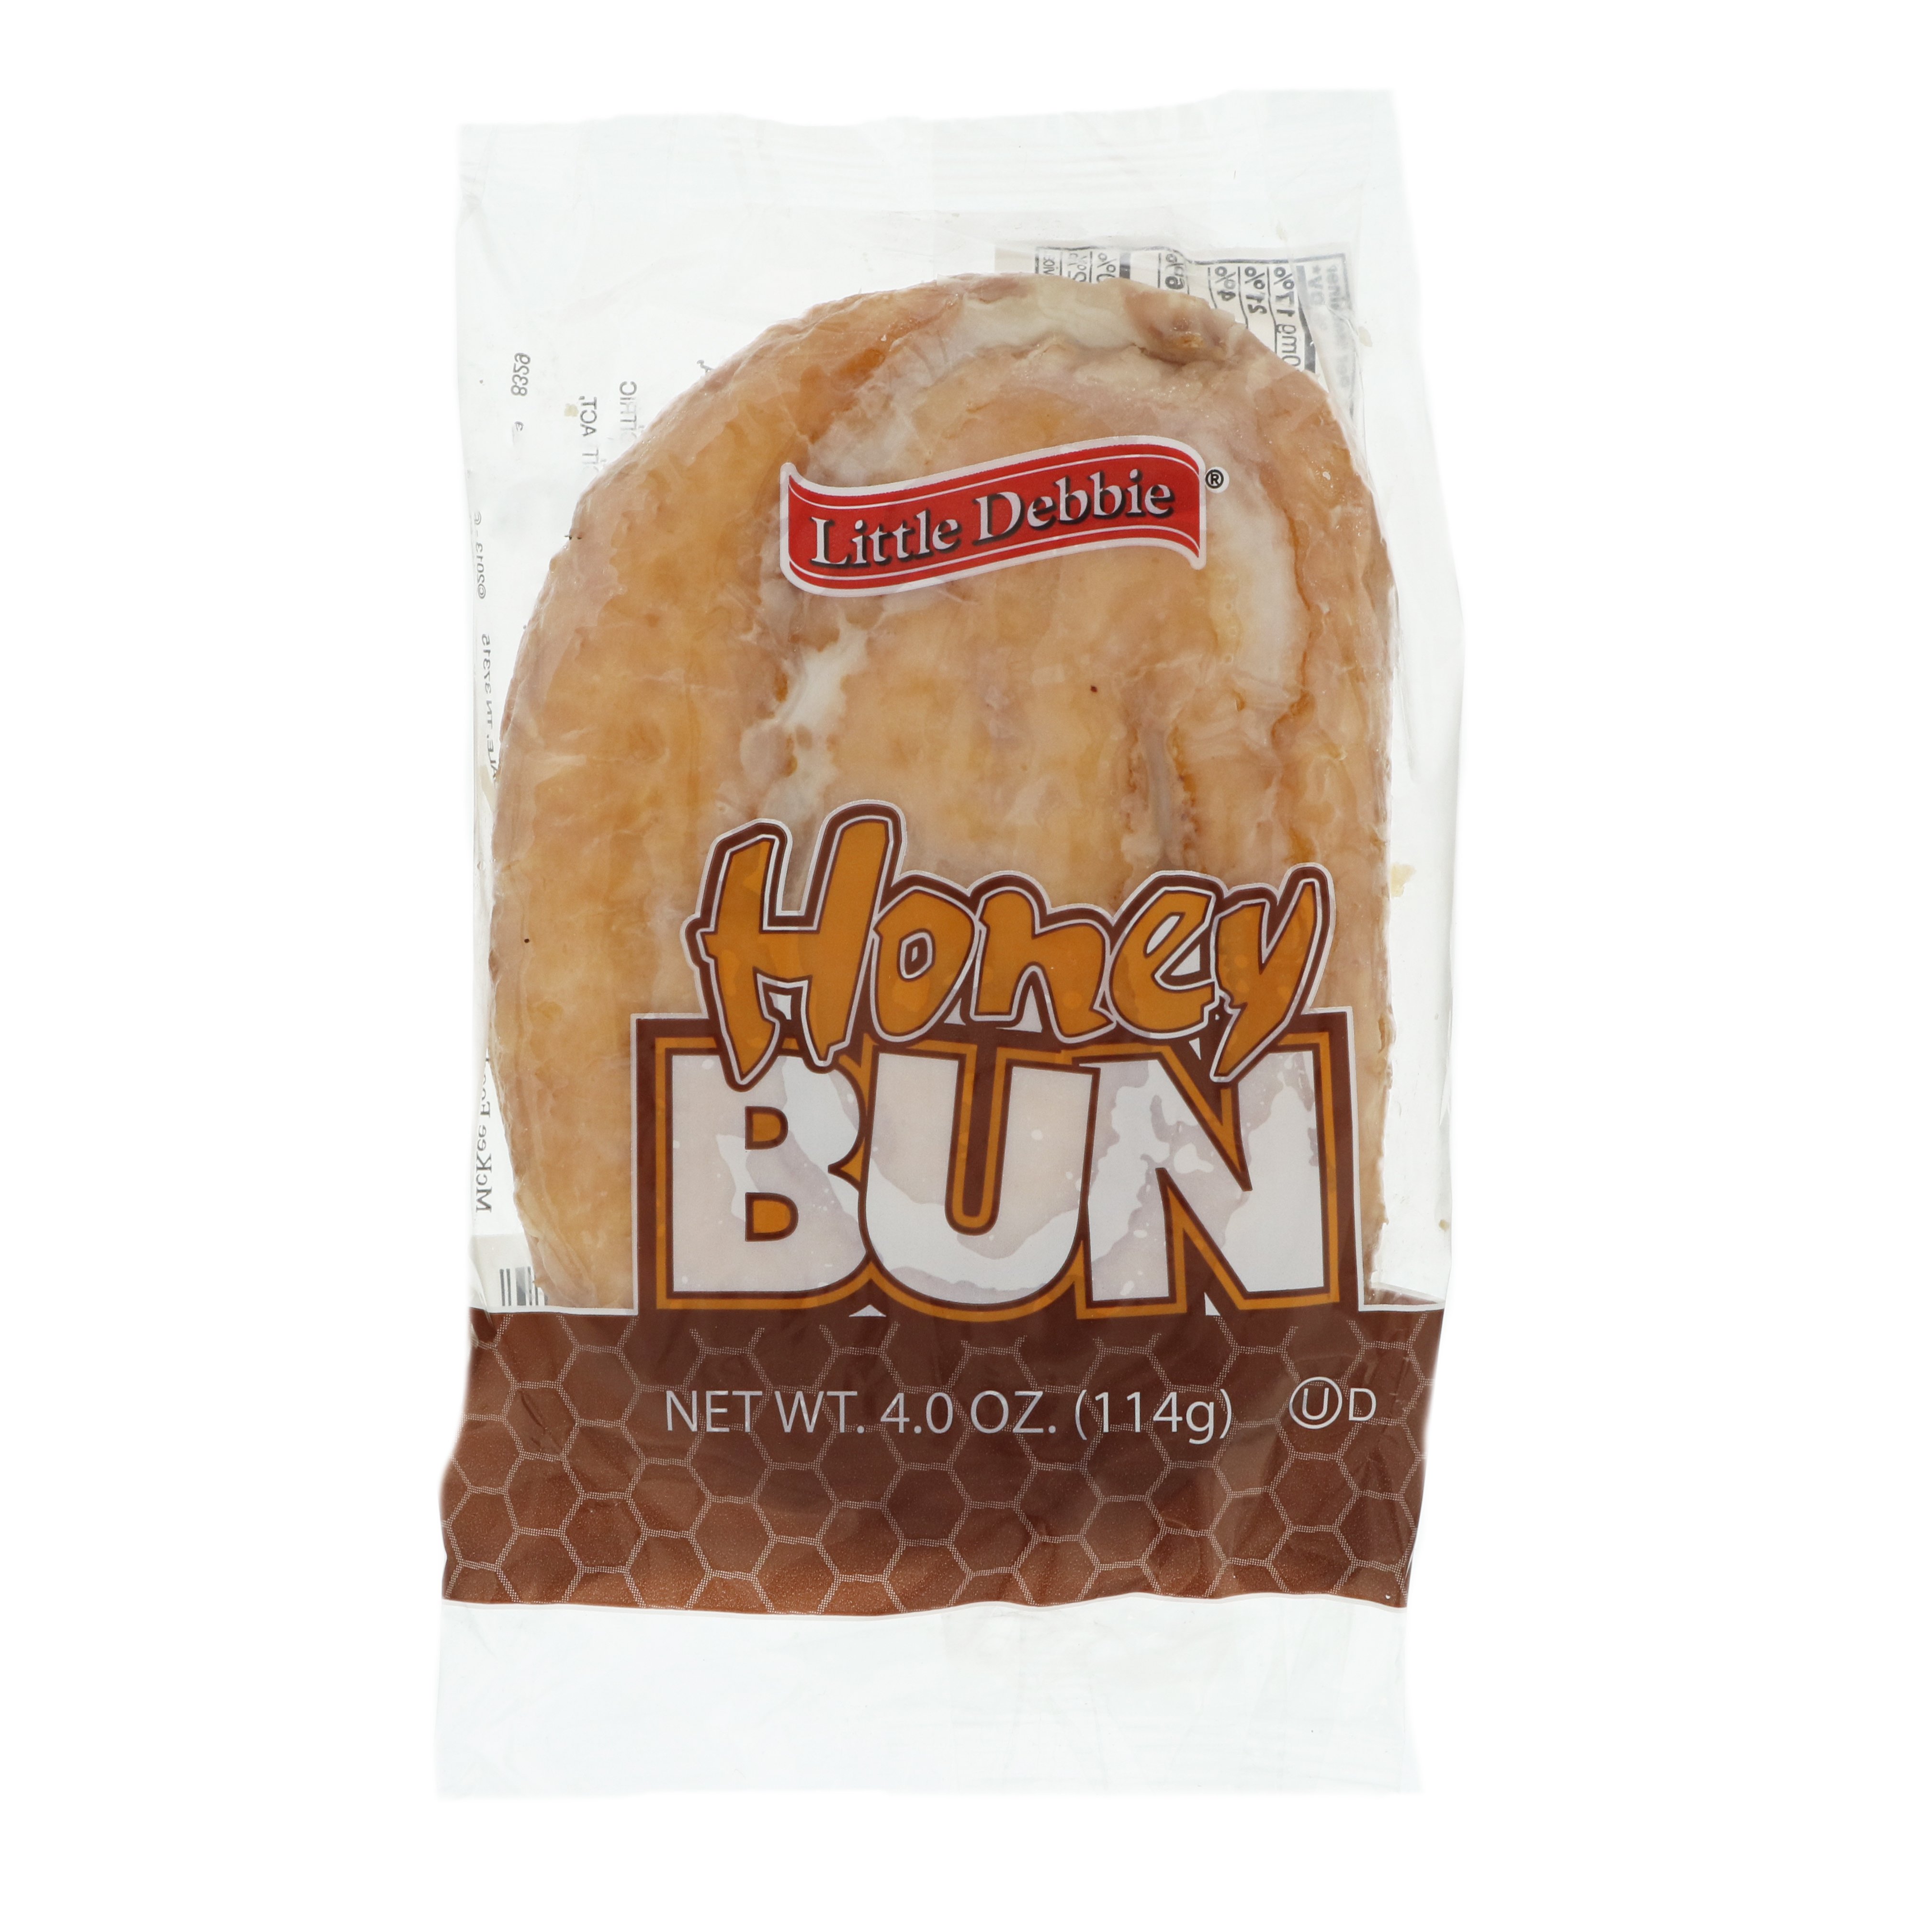 Little Debbie Honey Bun - Shop Snack Cakes at H-E-B